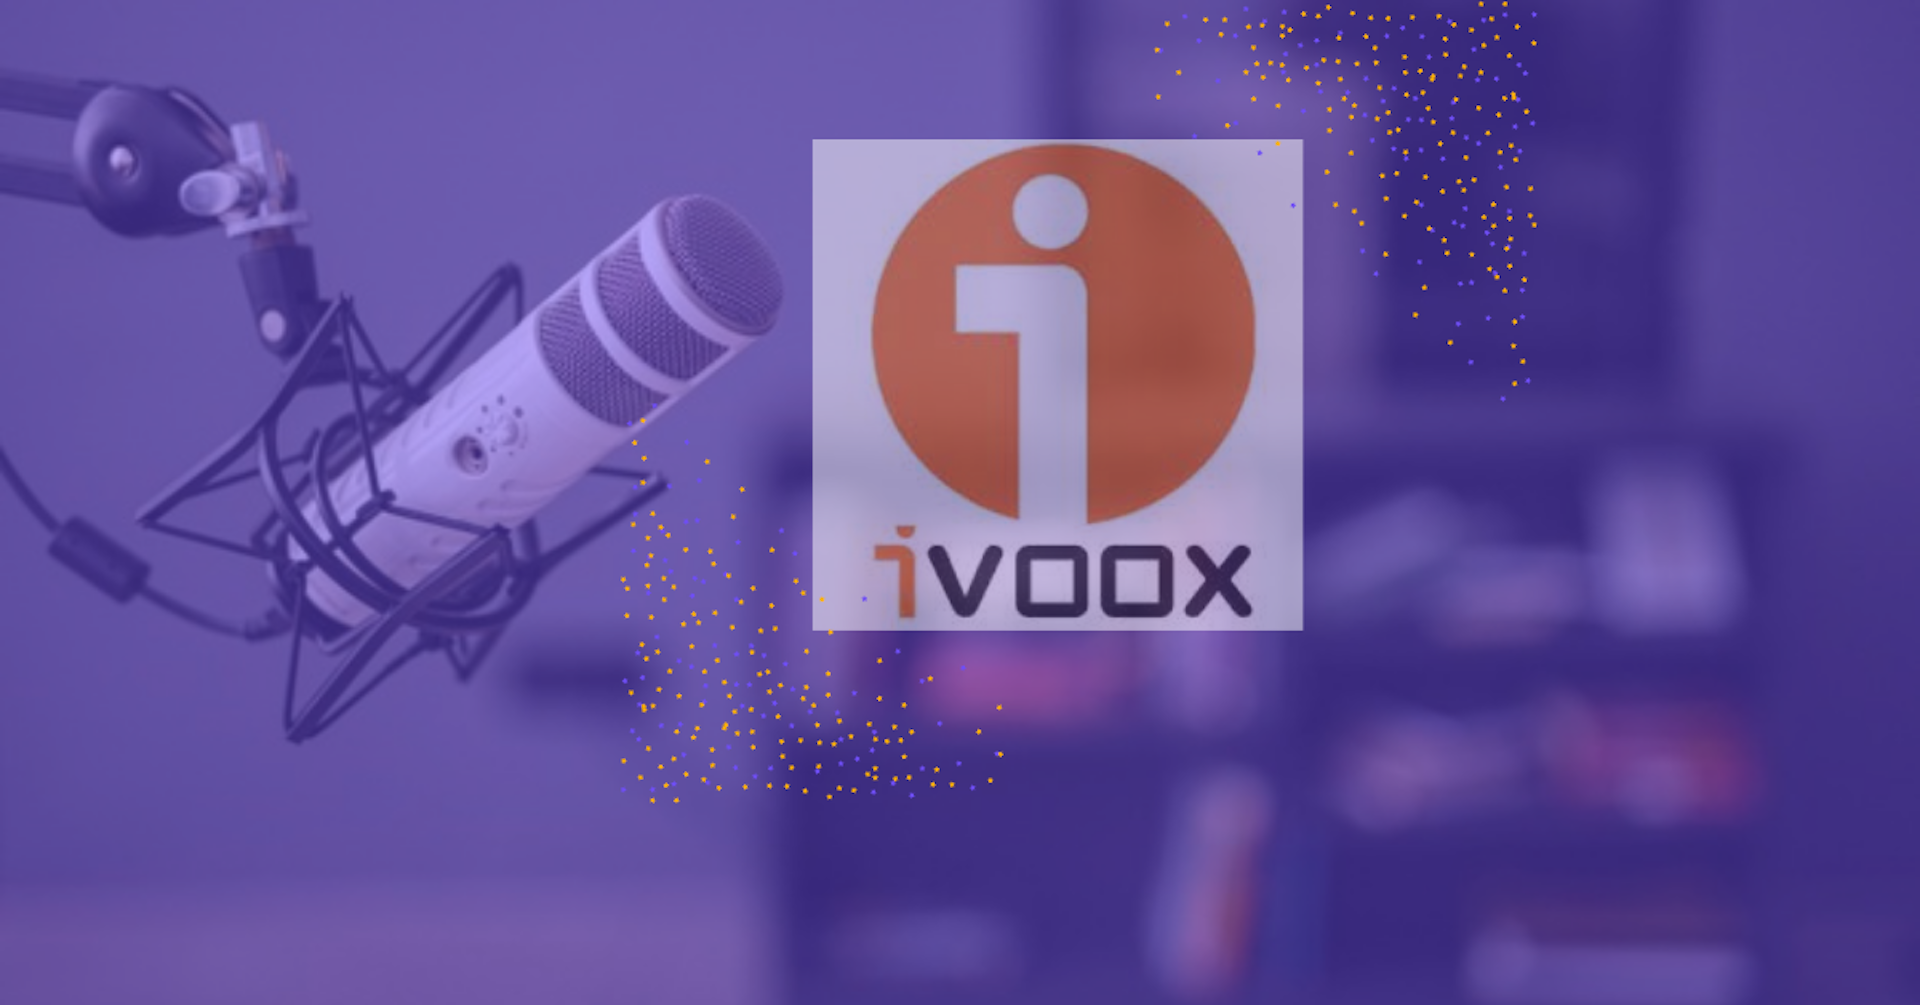 Ivoox podcast: enciende el micrófono y comparte el sonido de tu pasión